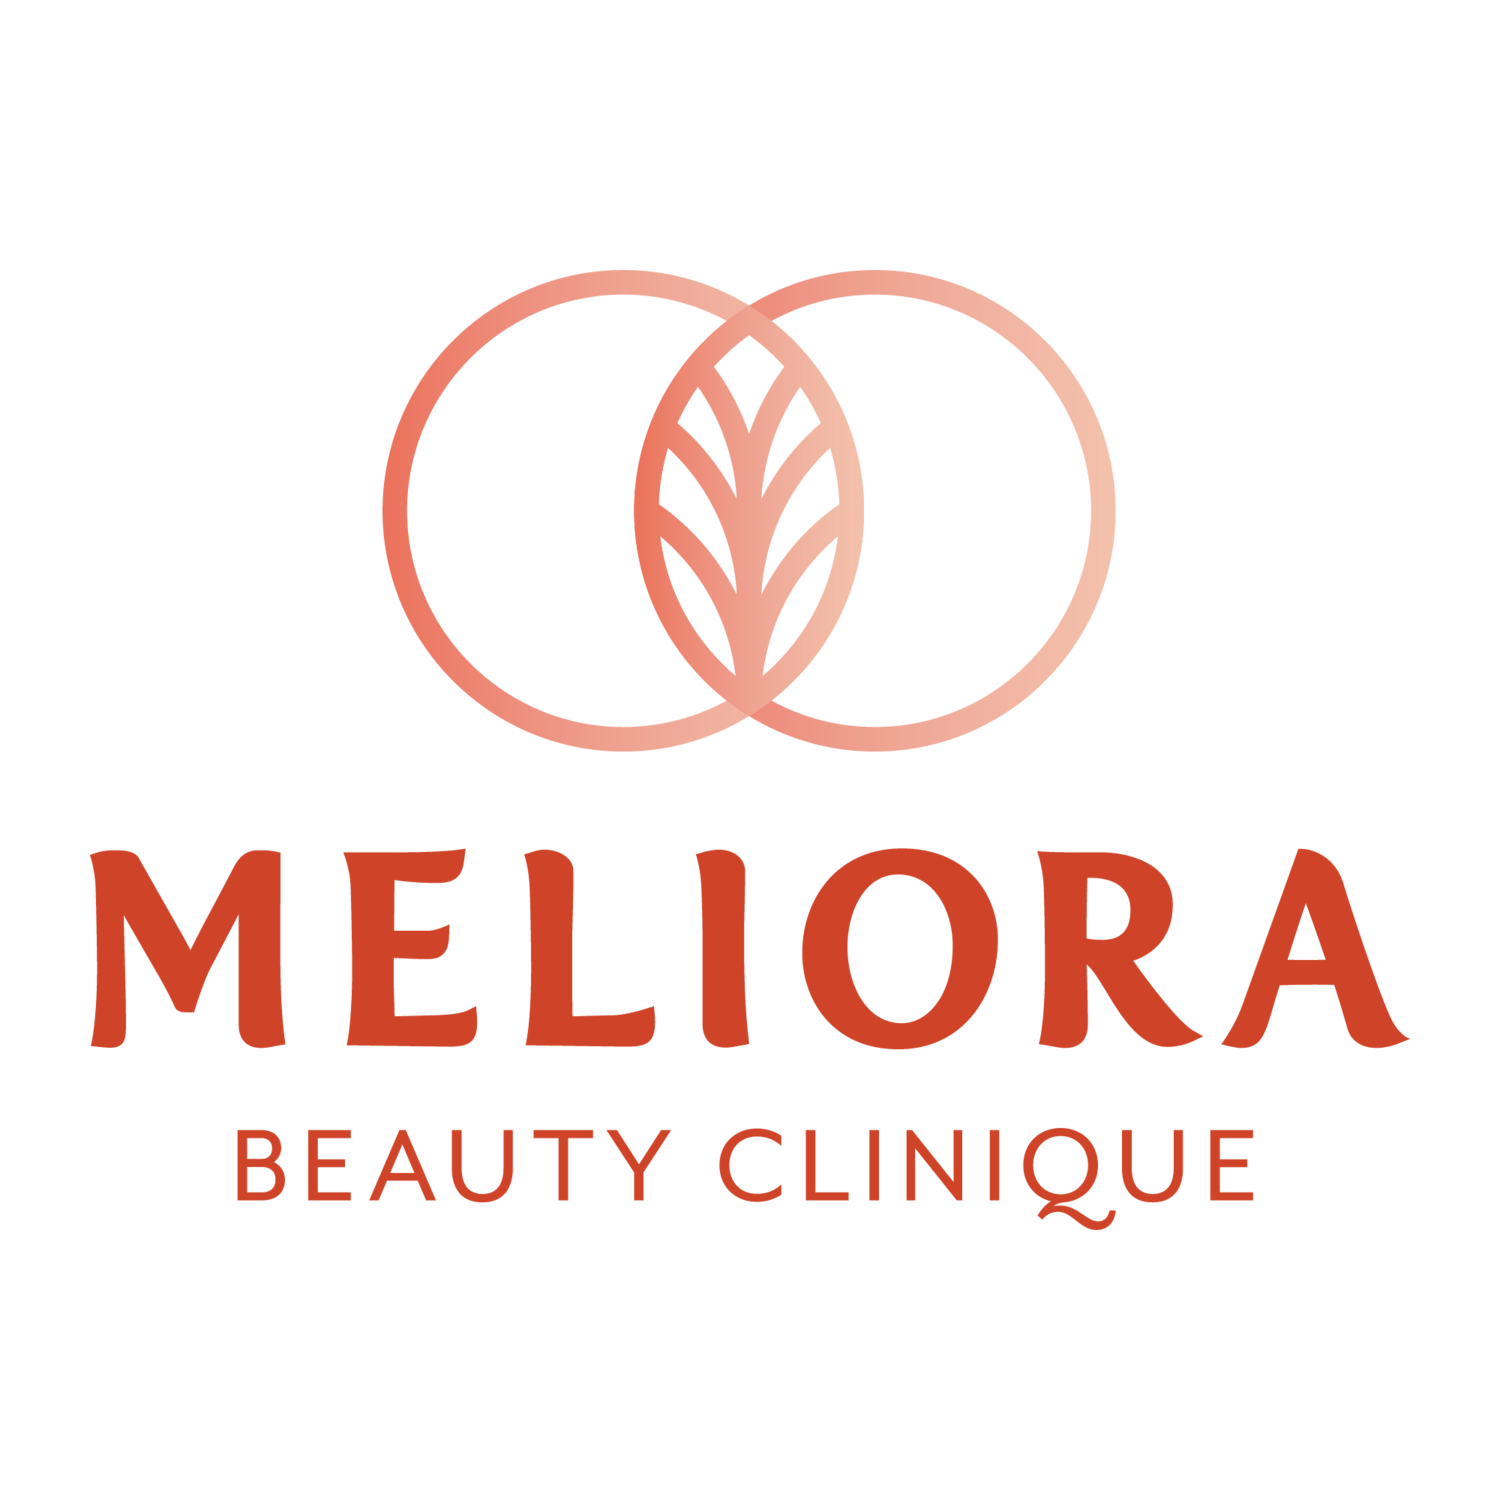 Meliora Beauty Clinique